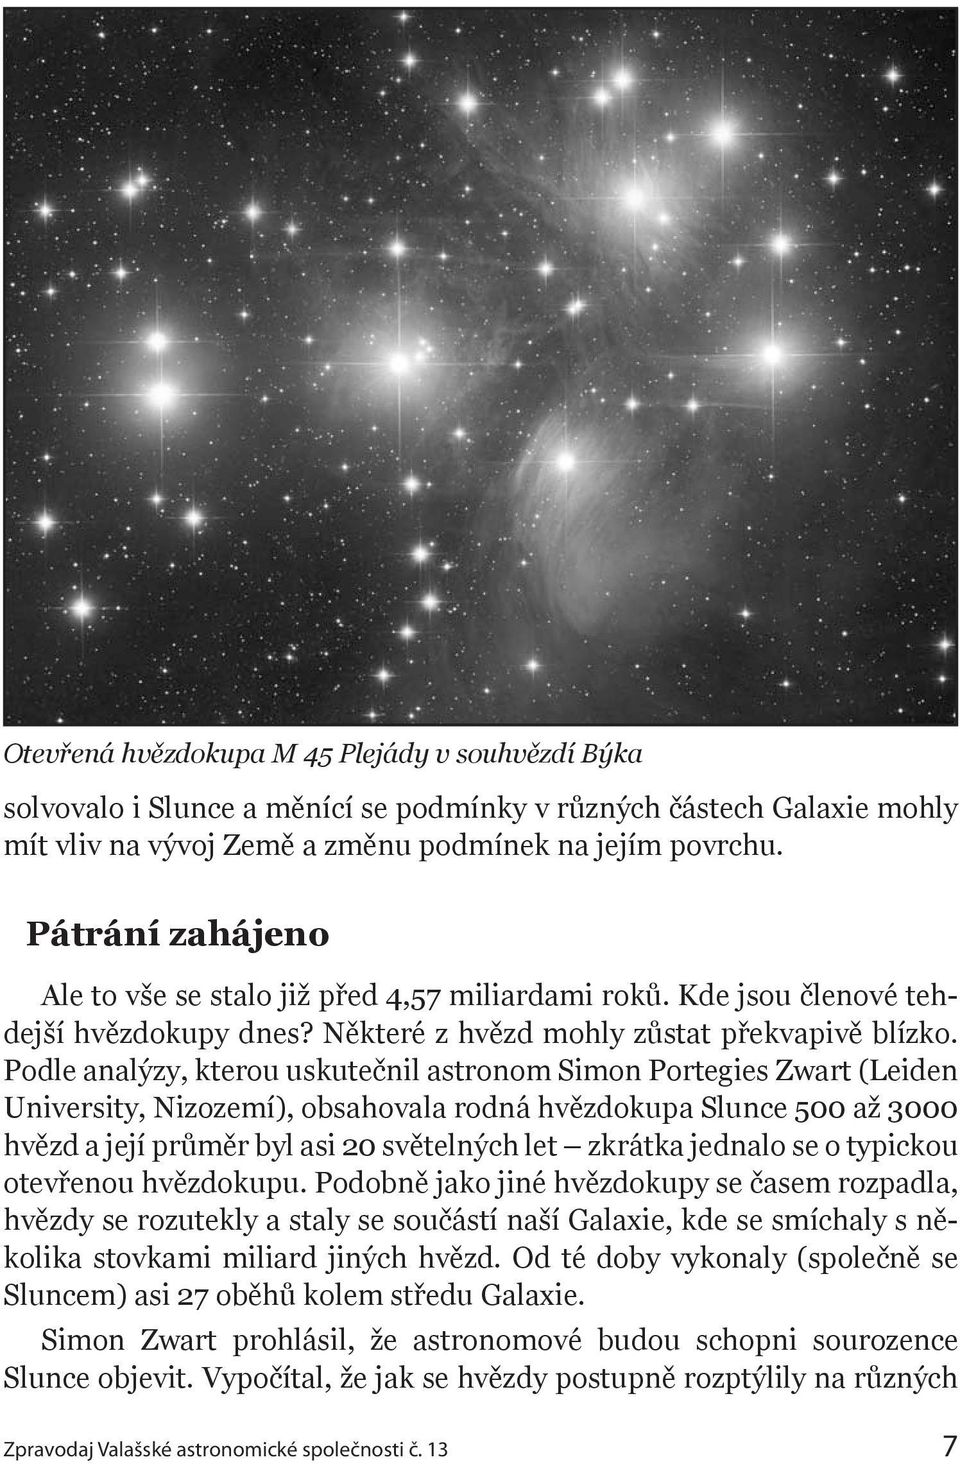 Podle analýzy, kterou uskutečnil astronom Simon Portegies Zwart (Leiden University, Nizozemí), obsahovala rodná hvězdokupa Slunce 500 až 3000 hvězd a její průměr byl asi 20 světelných let zkrátka